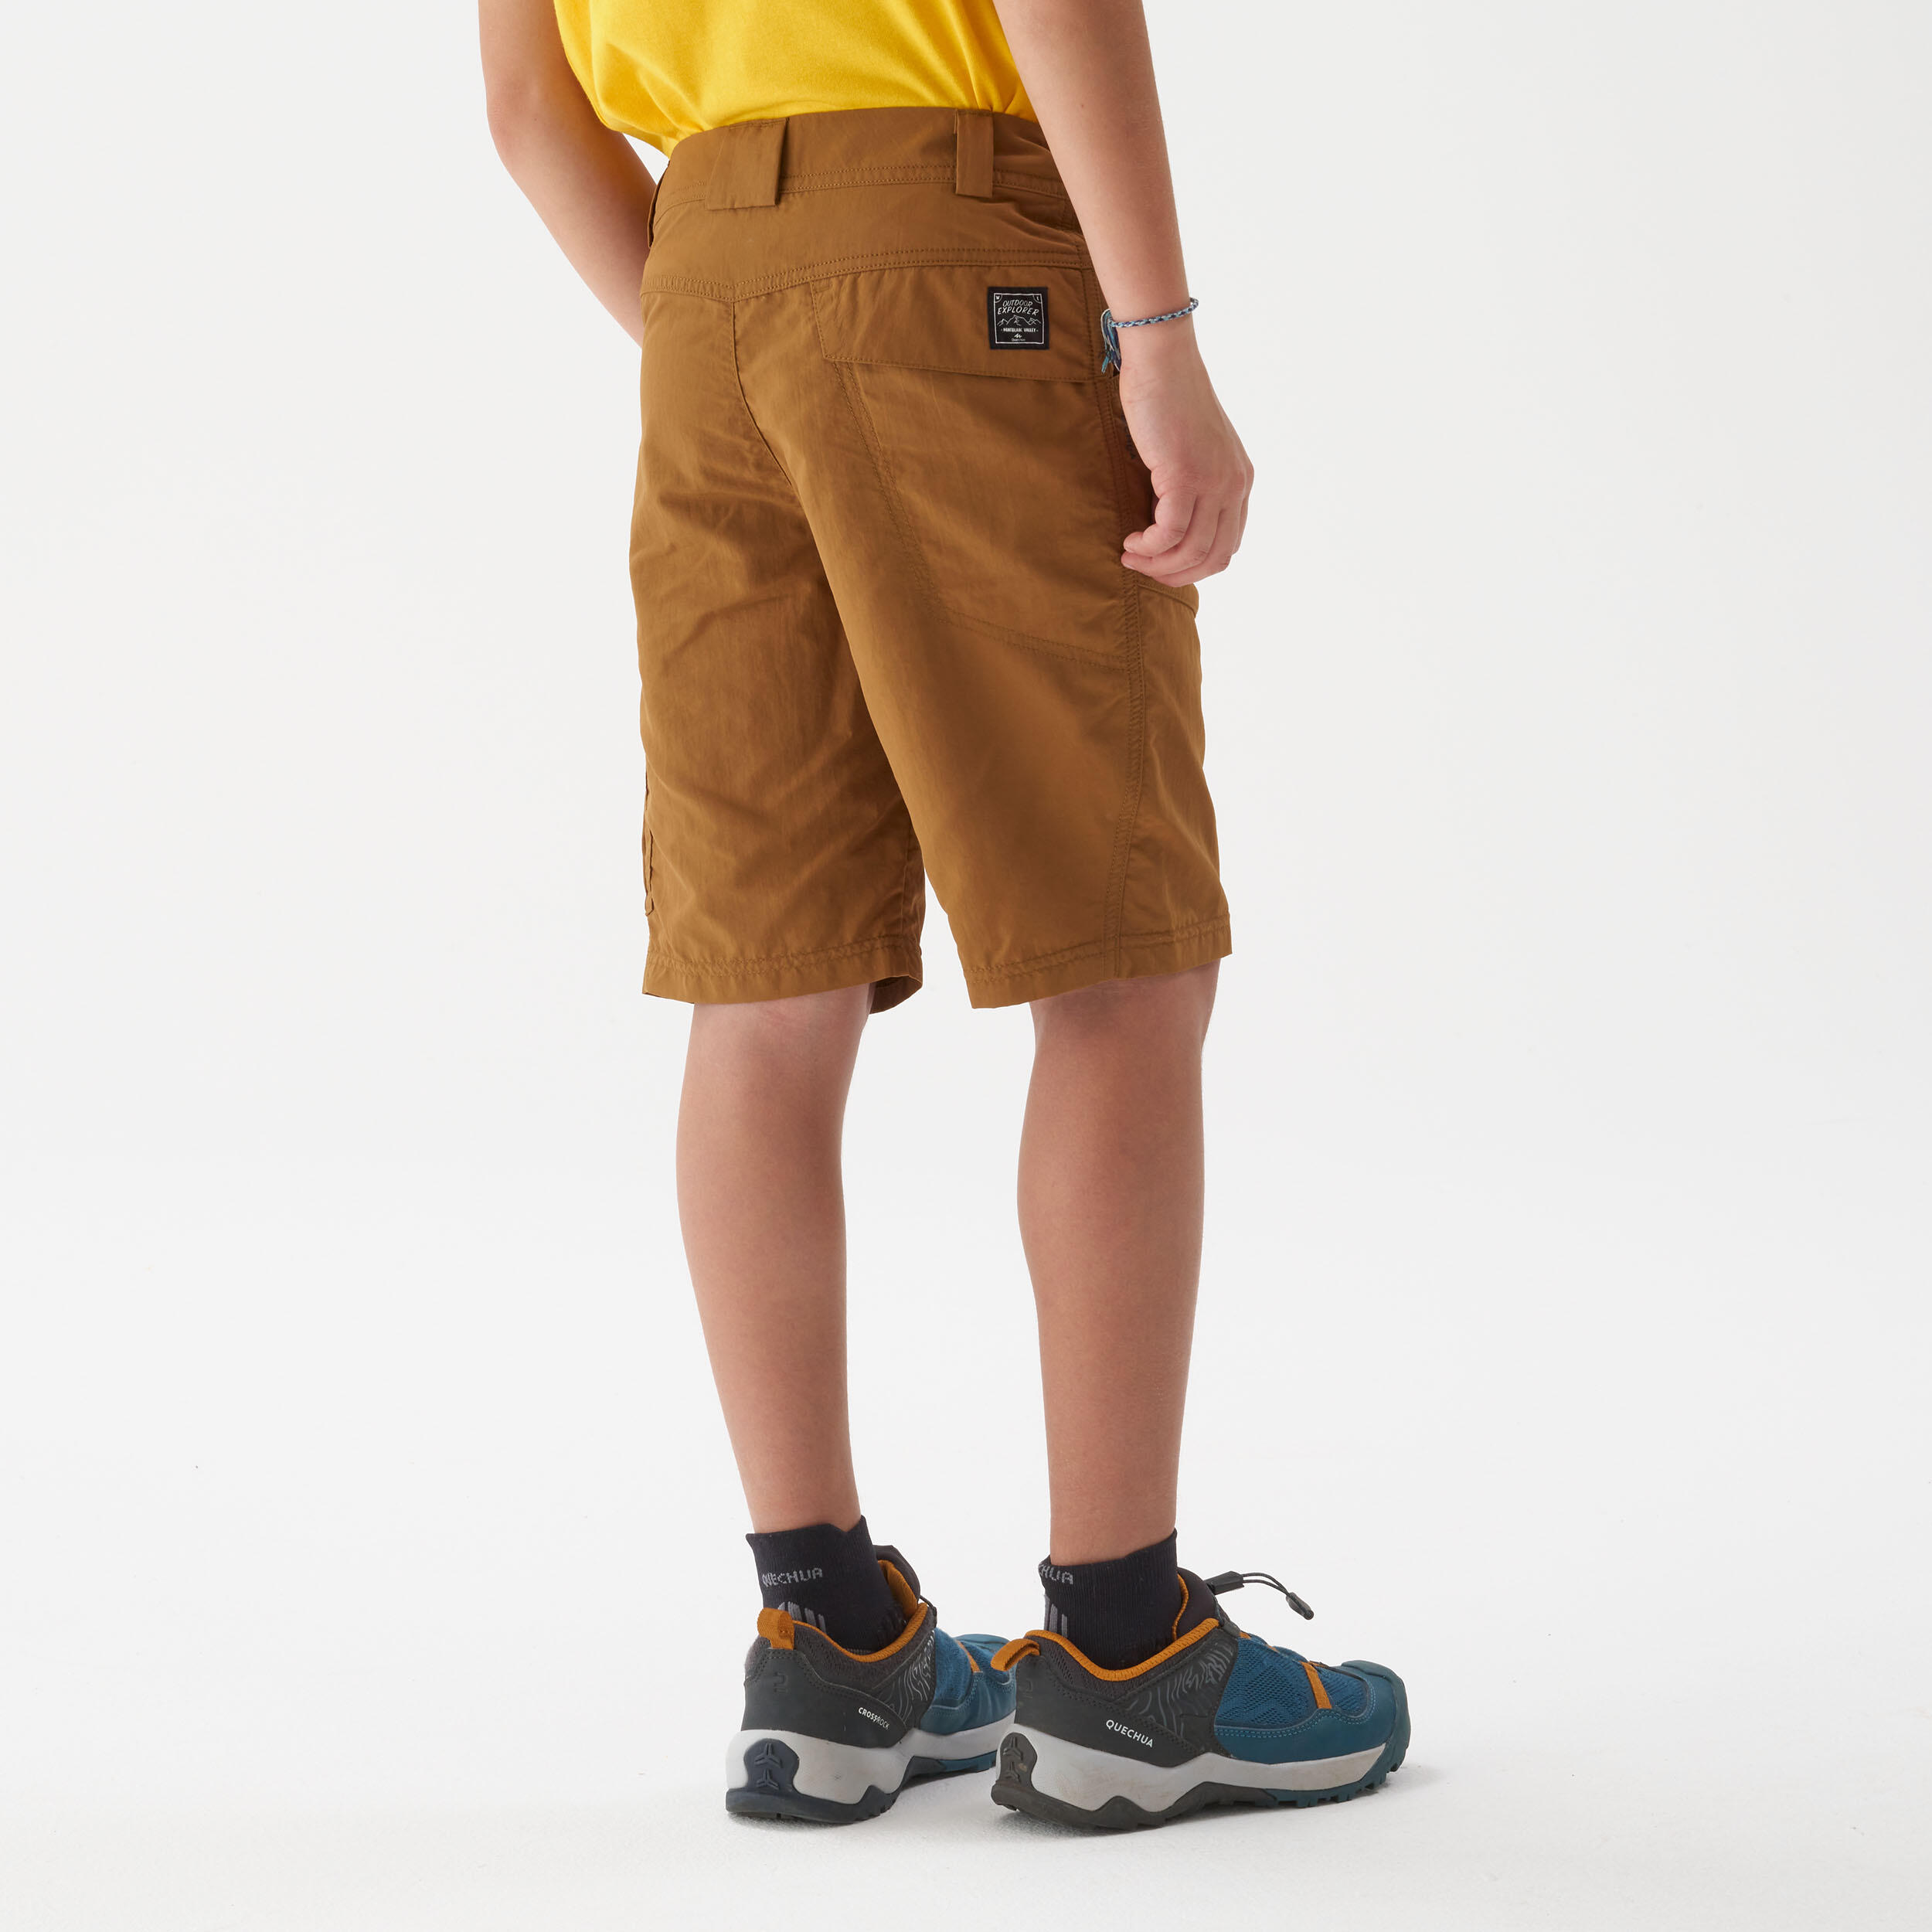 Child's hiking shorts - MH500 dark brown - 7-15 years 3/6